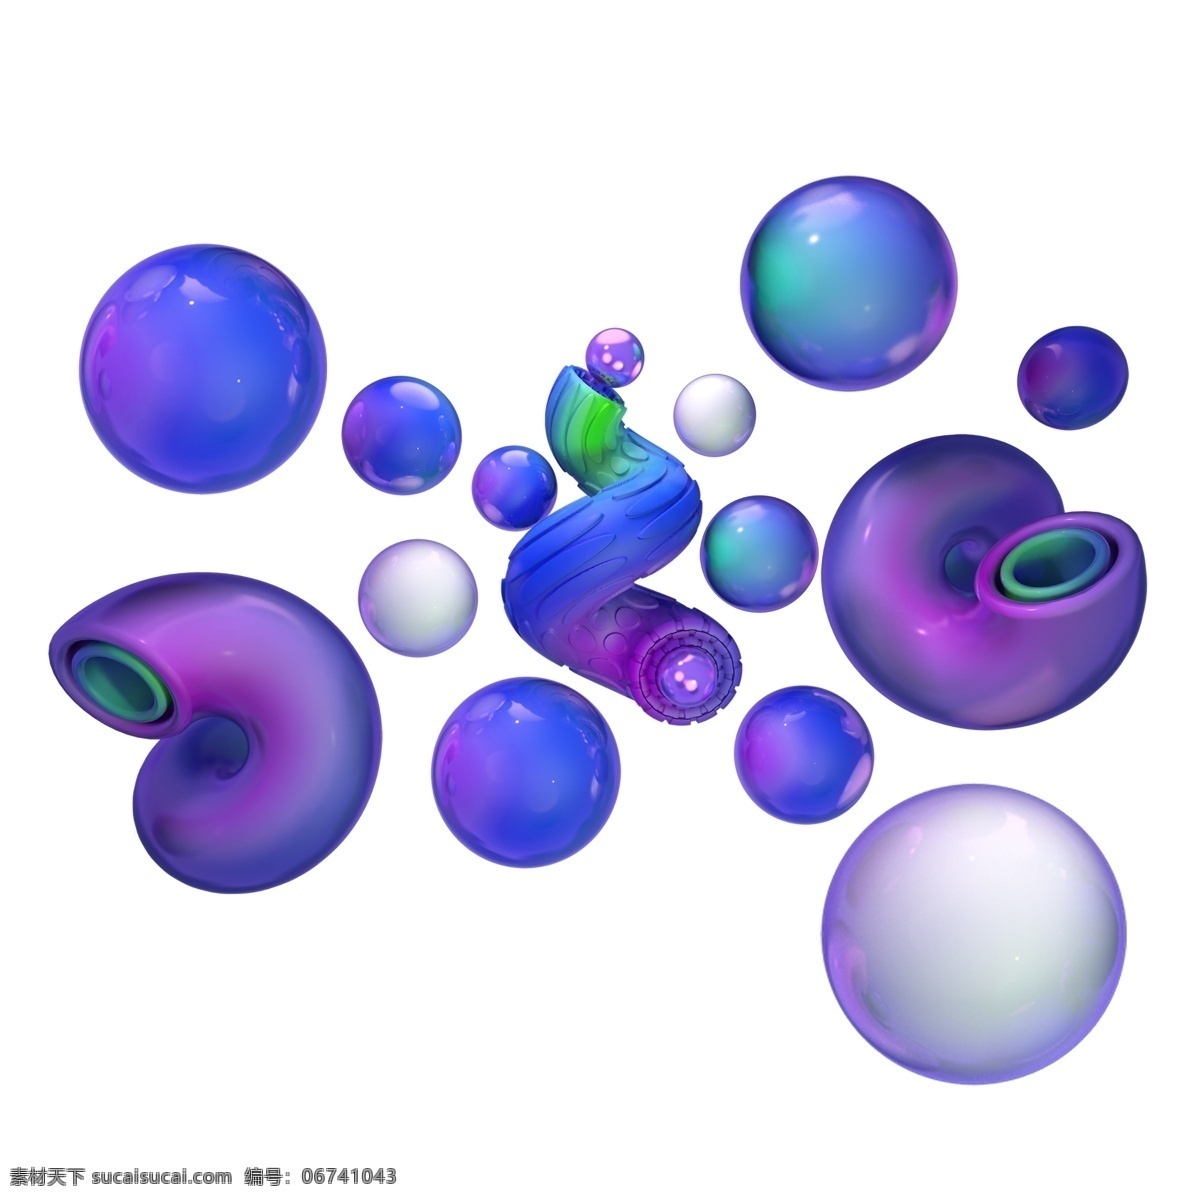 c4d 电商 风 质感 玻璃 球体 双十一 螺旋混合立体 管道 空间感 免抠图 渐变 彩色 绚丽 促销